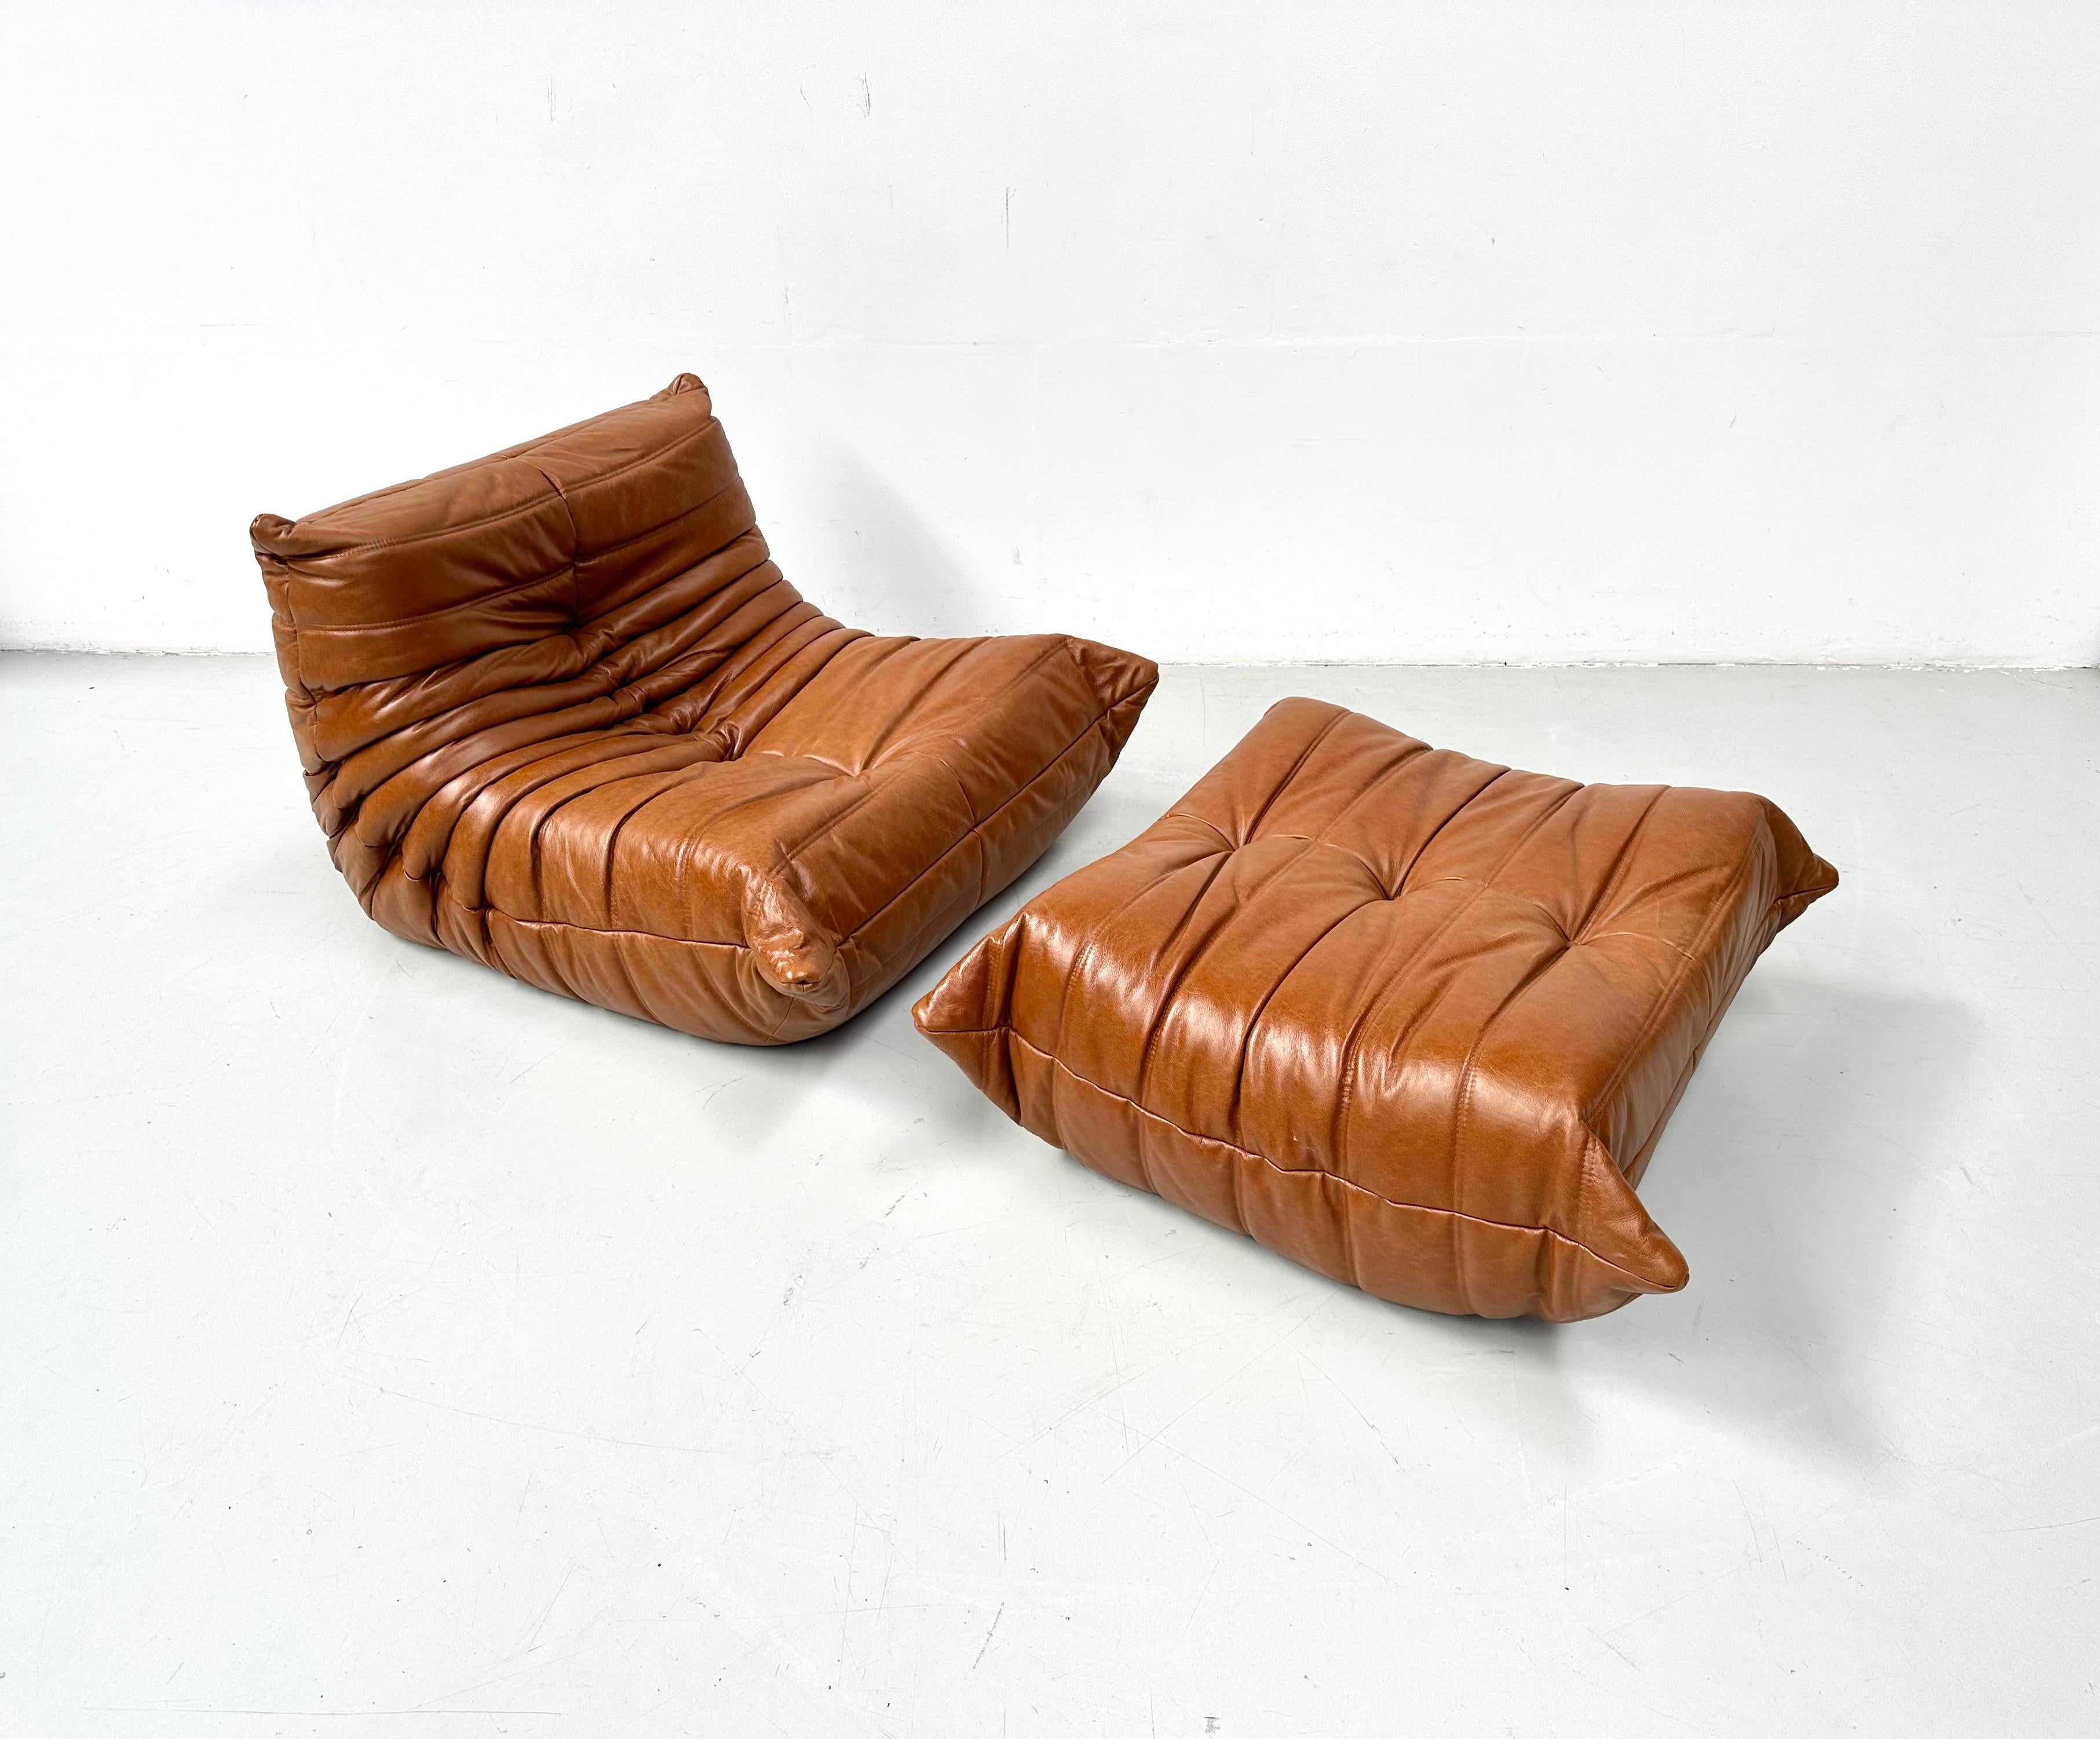 Der Togo ist ein Entwurf von Michel Ducaroy aus dem Jahr 1973.
Es ist das erste Möbelstück, das aus Schaumstoff hergestellt wurde und immer noch seinen Komfort hat. Hergestellt von Ligne Roset in Frankreich.